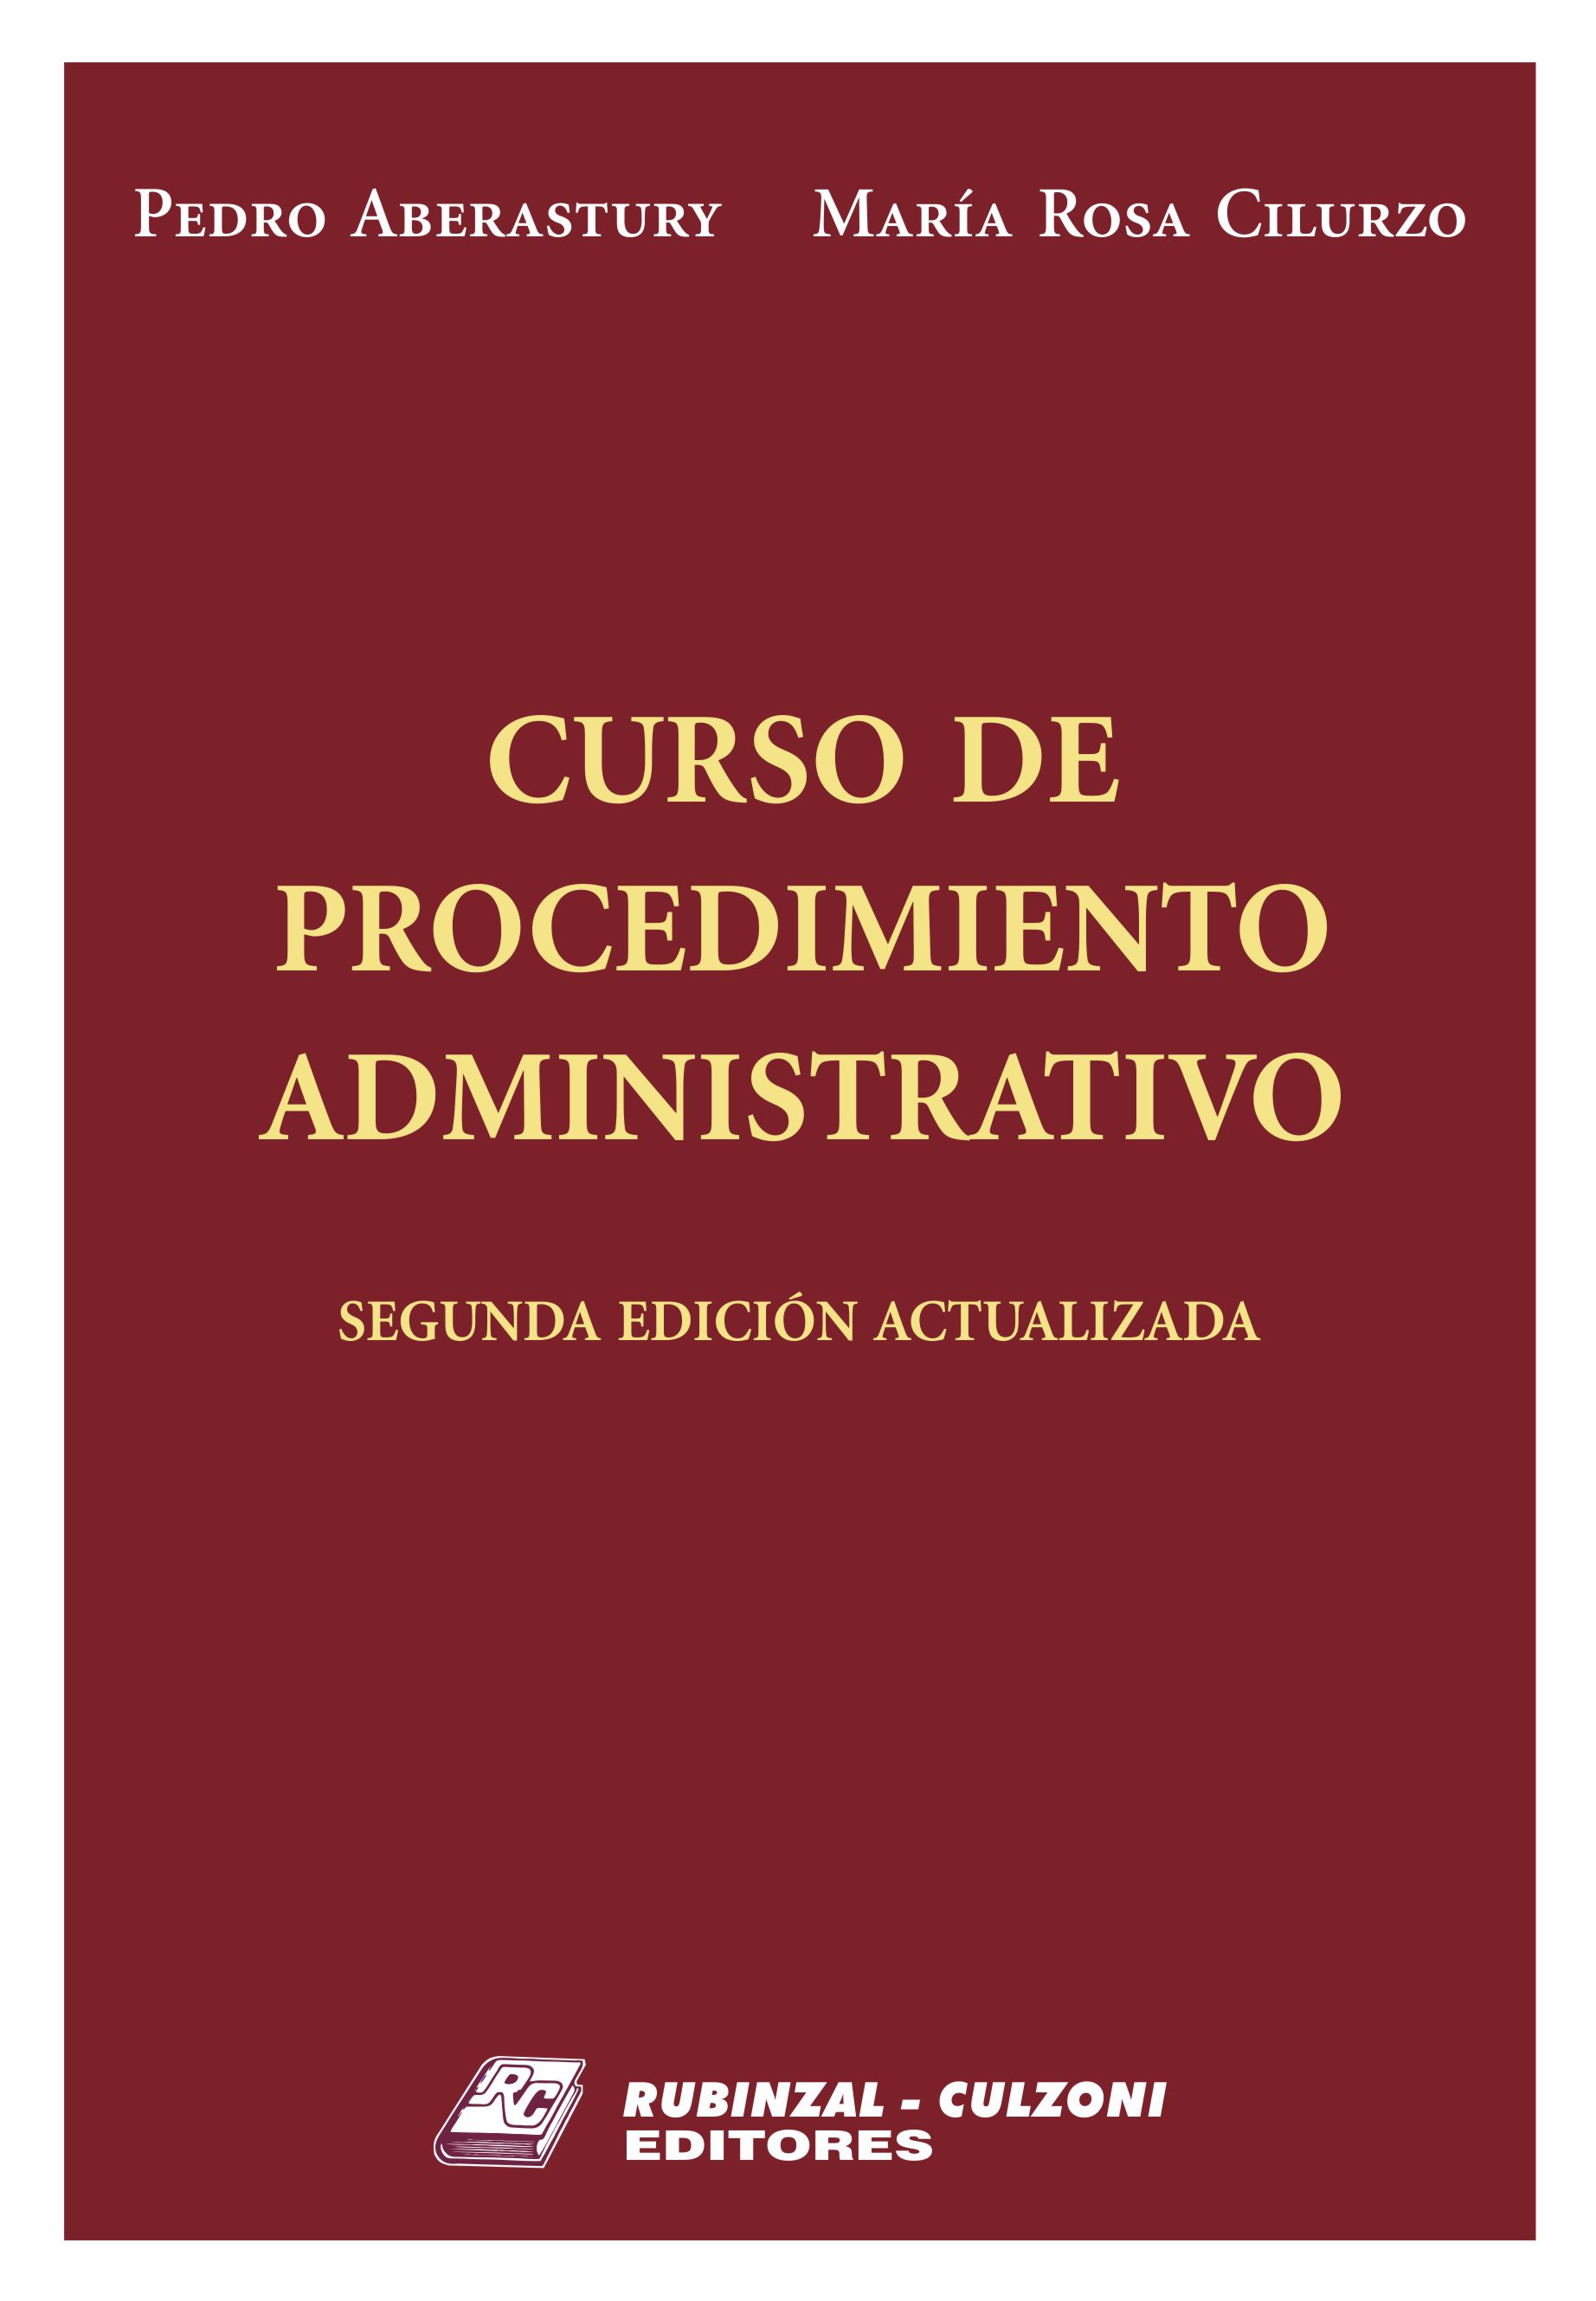 Curso de Procedimiento Administrativo. 2° Edición actualizada